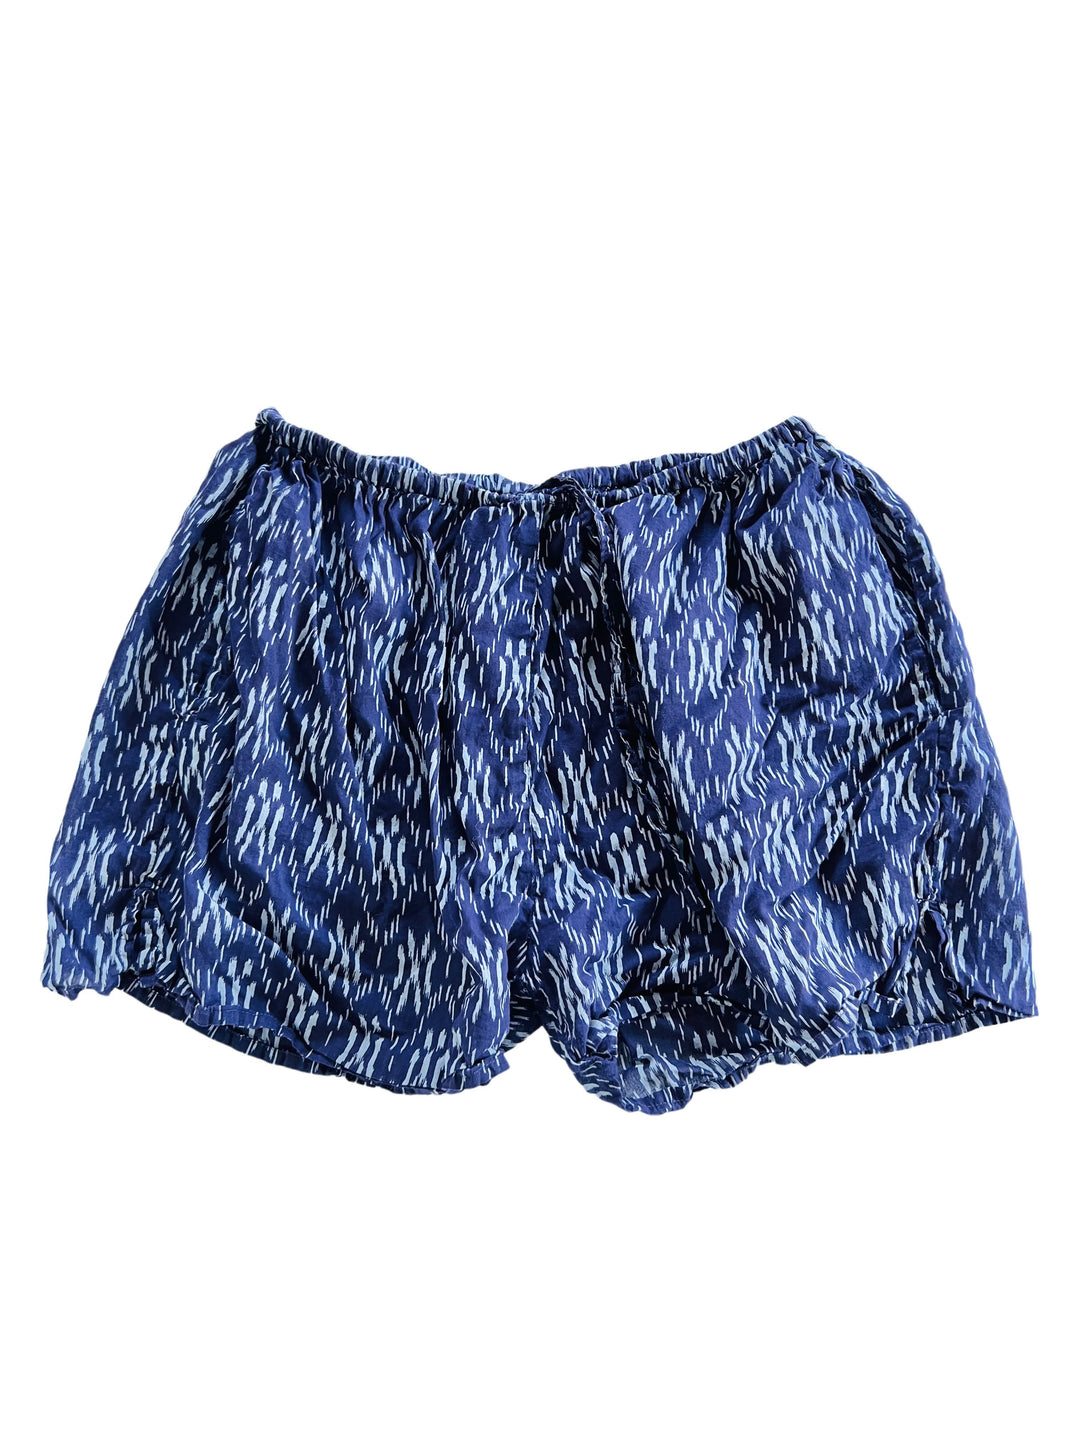 Hawaii Beach Shorts - Indigo Ikat